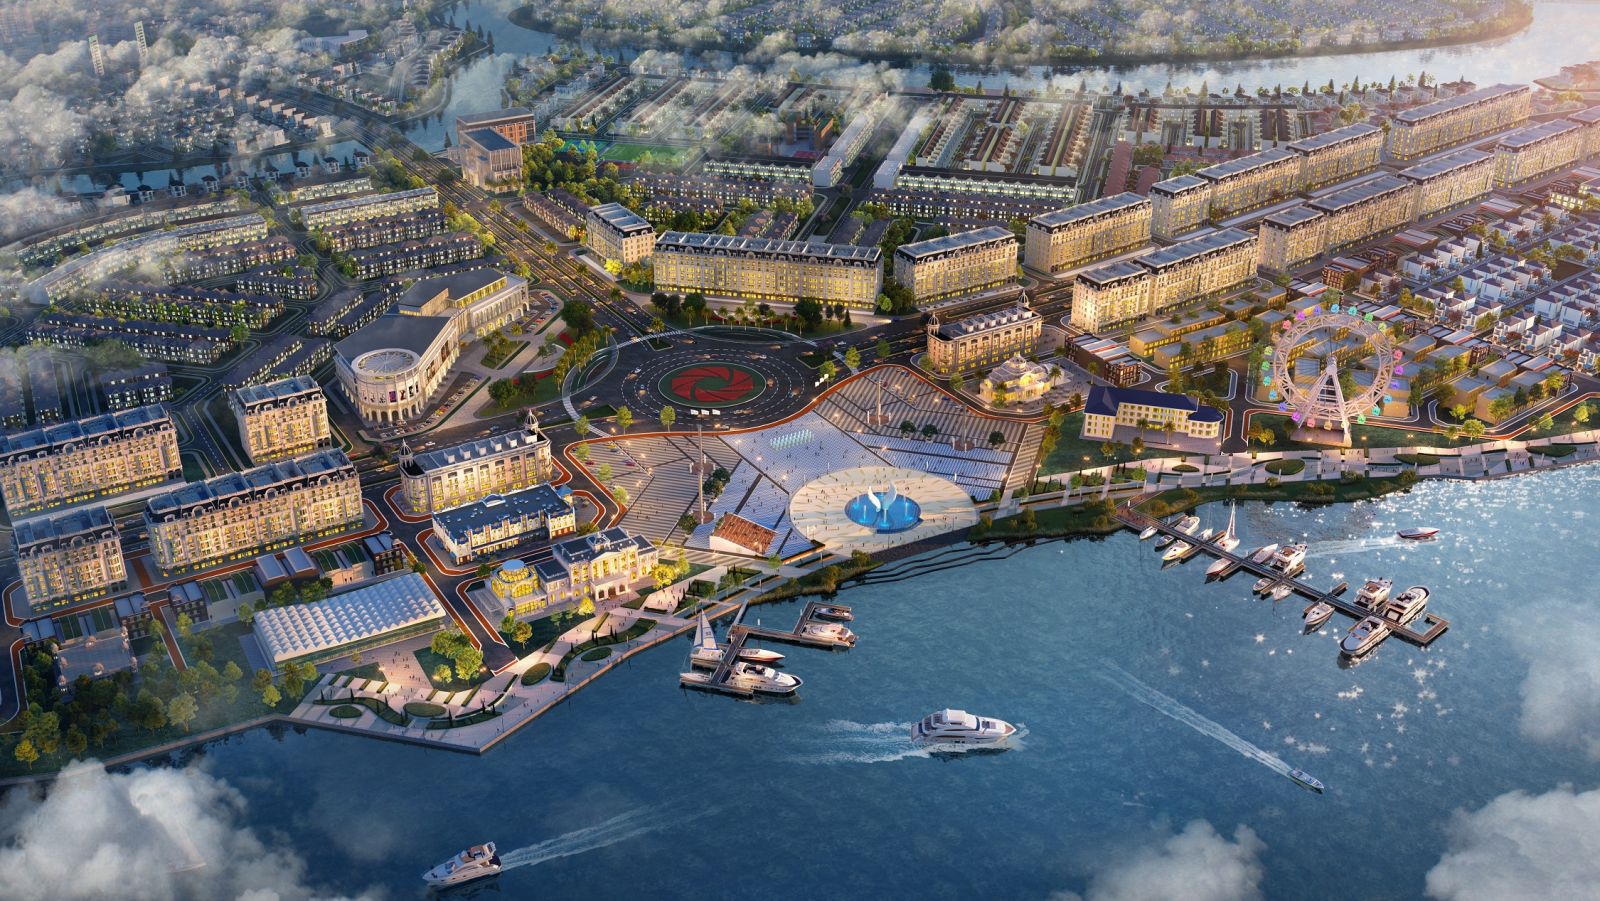 Tổ hợp quảng trường bến du thuyền Aqua Marina tại Aqua City dự kiến hoàn thiện vào quý 4/2021 kỳ vọng sẽ là điểm đến hấp dẫn và gia tăng trị BĐS nơi đây.